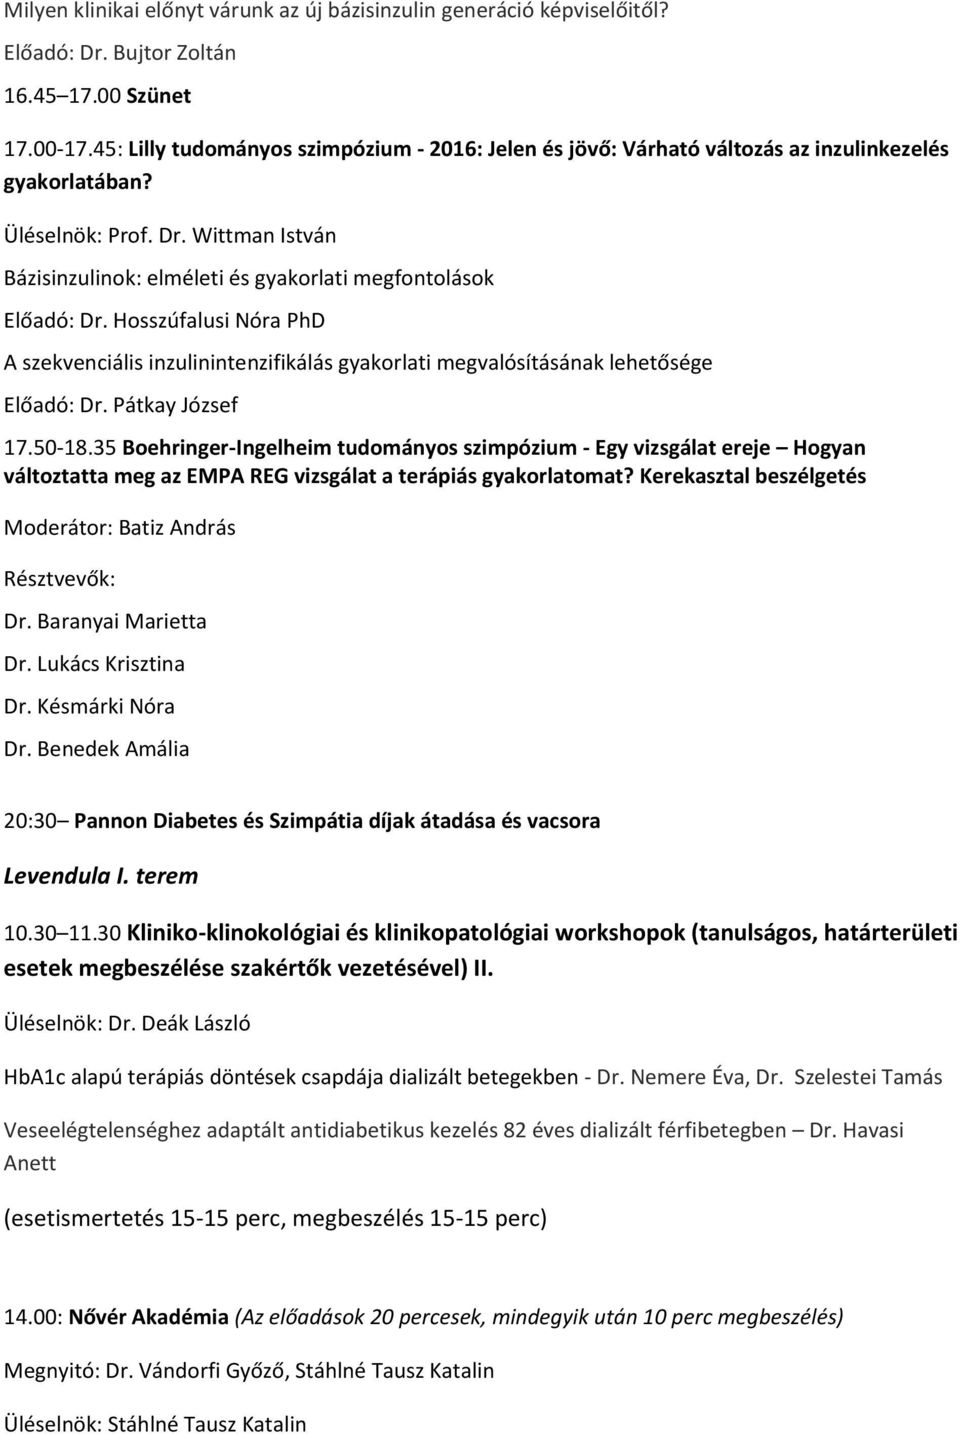 PROGRAMFÜZET. A veszprémi Csolnoky Ferenc Kórház, a MESZK veszprémi  területi szervezete és a Vanderlich Kft. tisztelettel meghívja Önt és  munkatársait - PDF Ingyenes letöltés